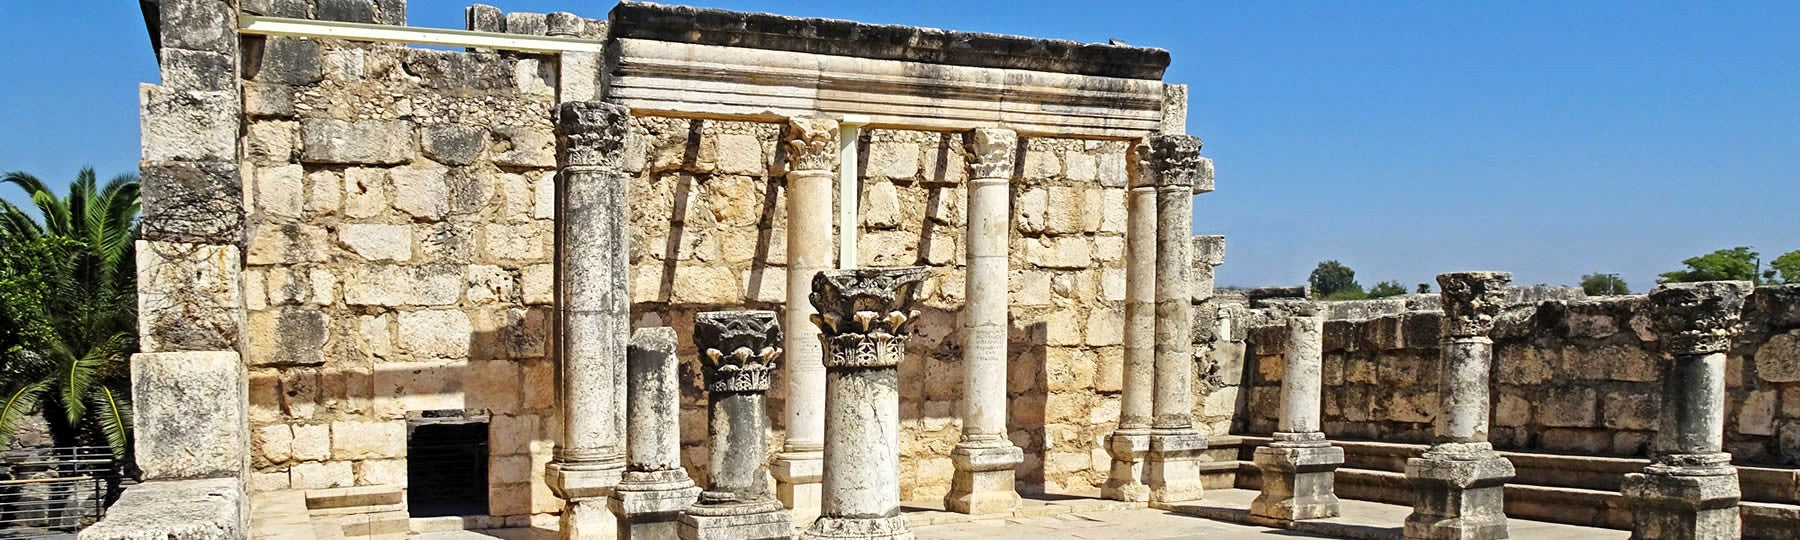 Visit Capernaum from Jerusalem or Tel Aviv Israel travel